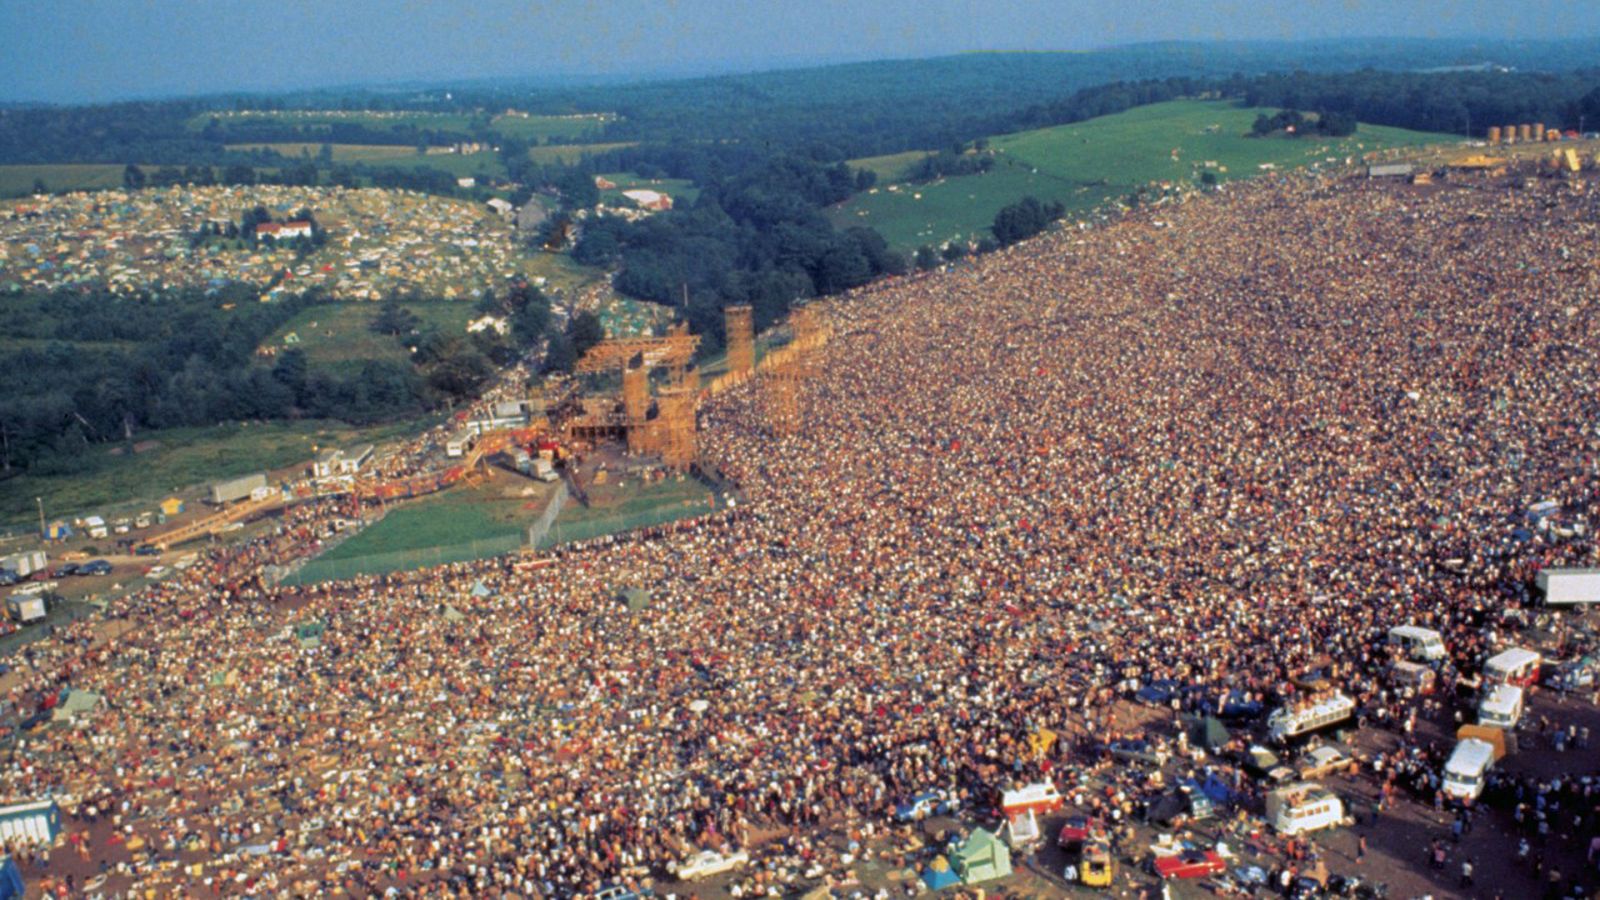 La noche temática - Woodstock, tres días que marcaron a una generación - Documental en RTVE